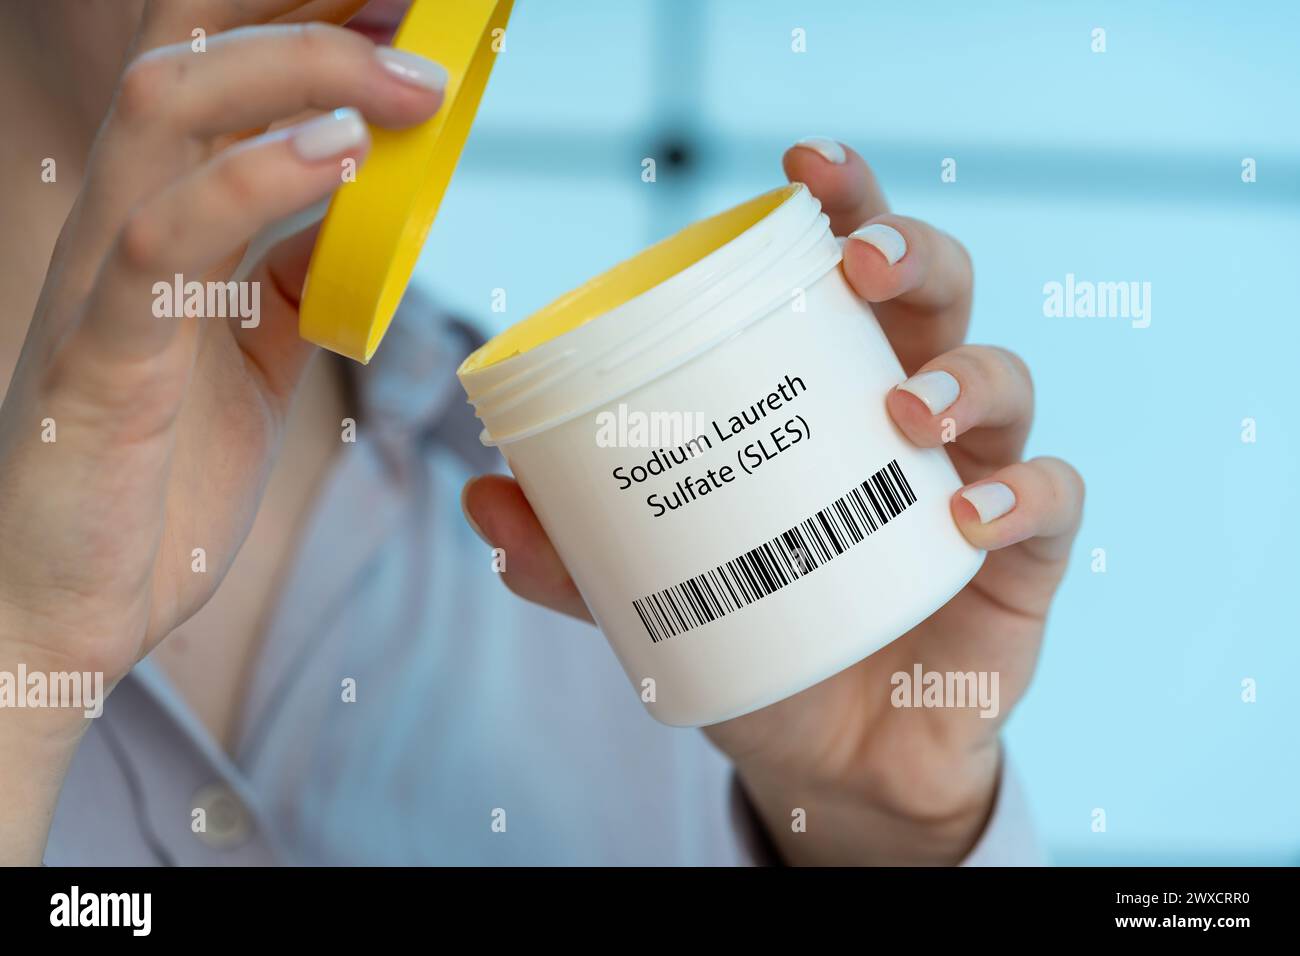 Additif alimentaire au sulfate de laureth de sodium, image conceptuelle Banque D'Images